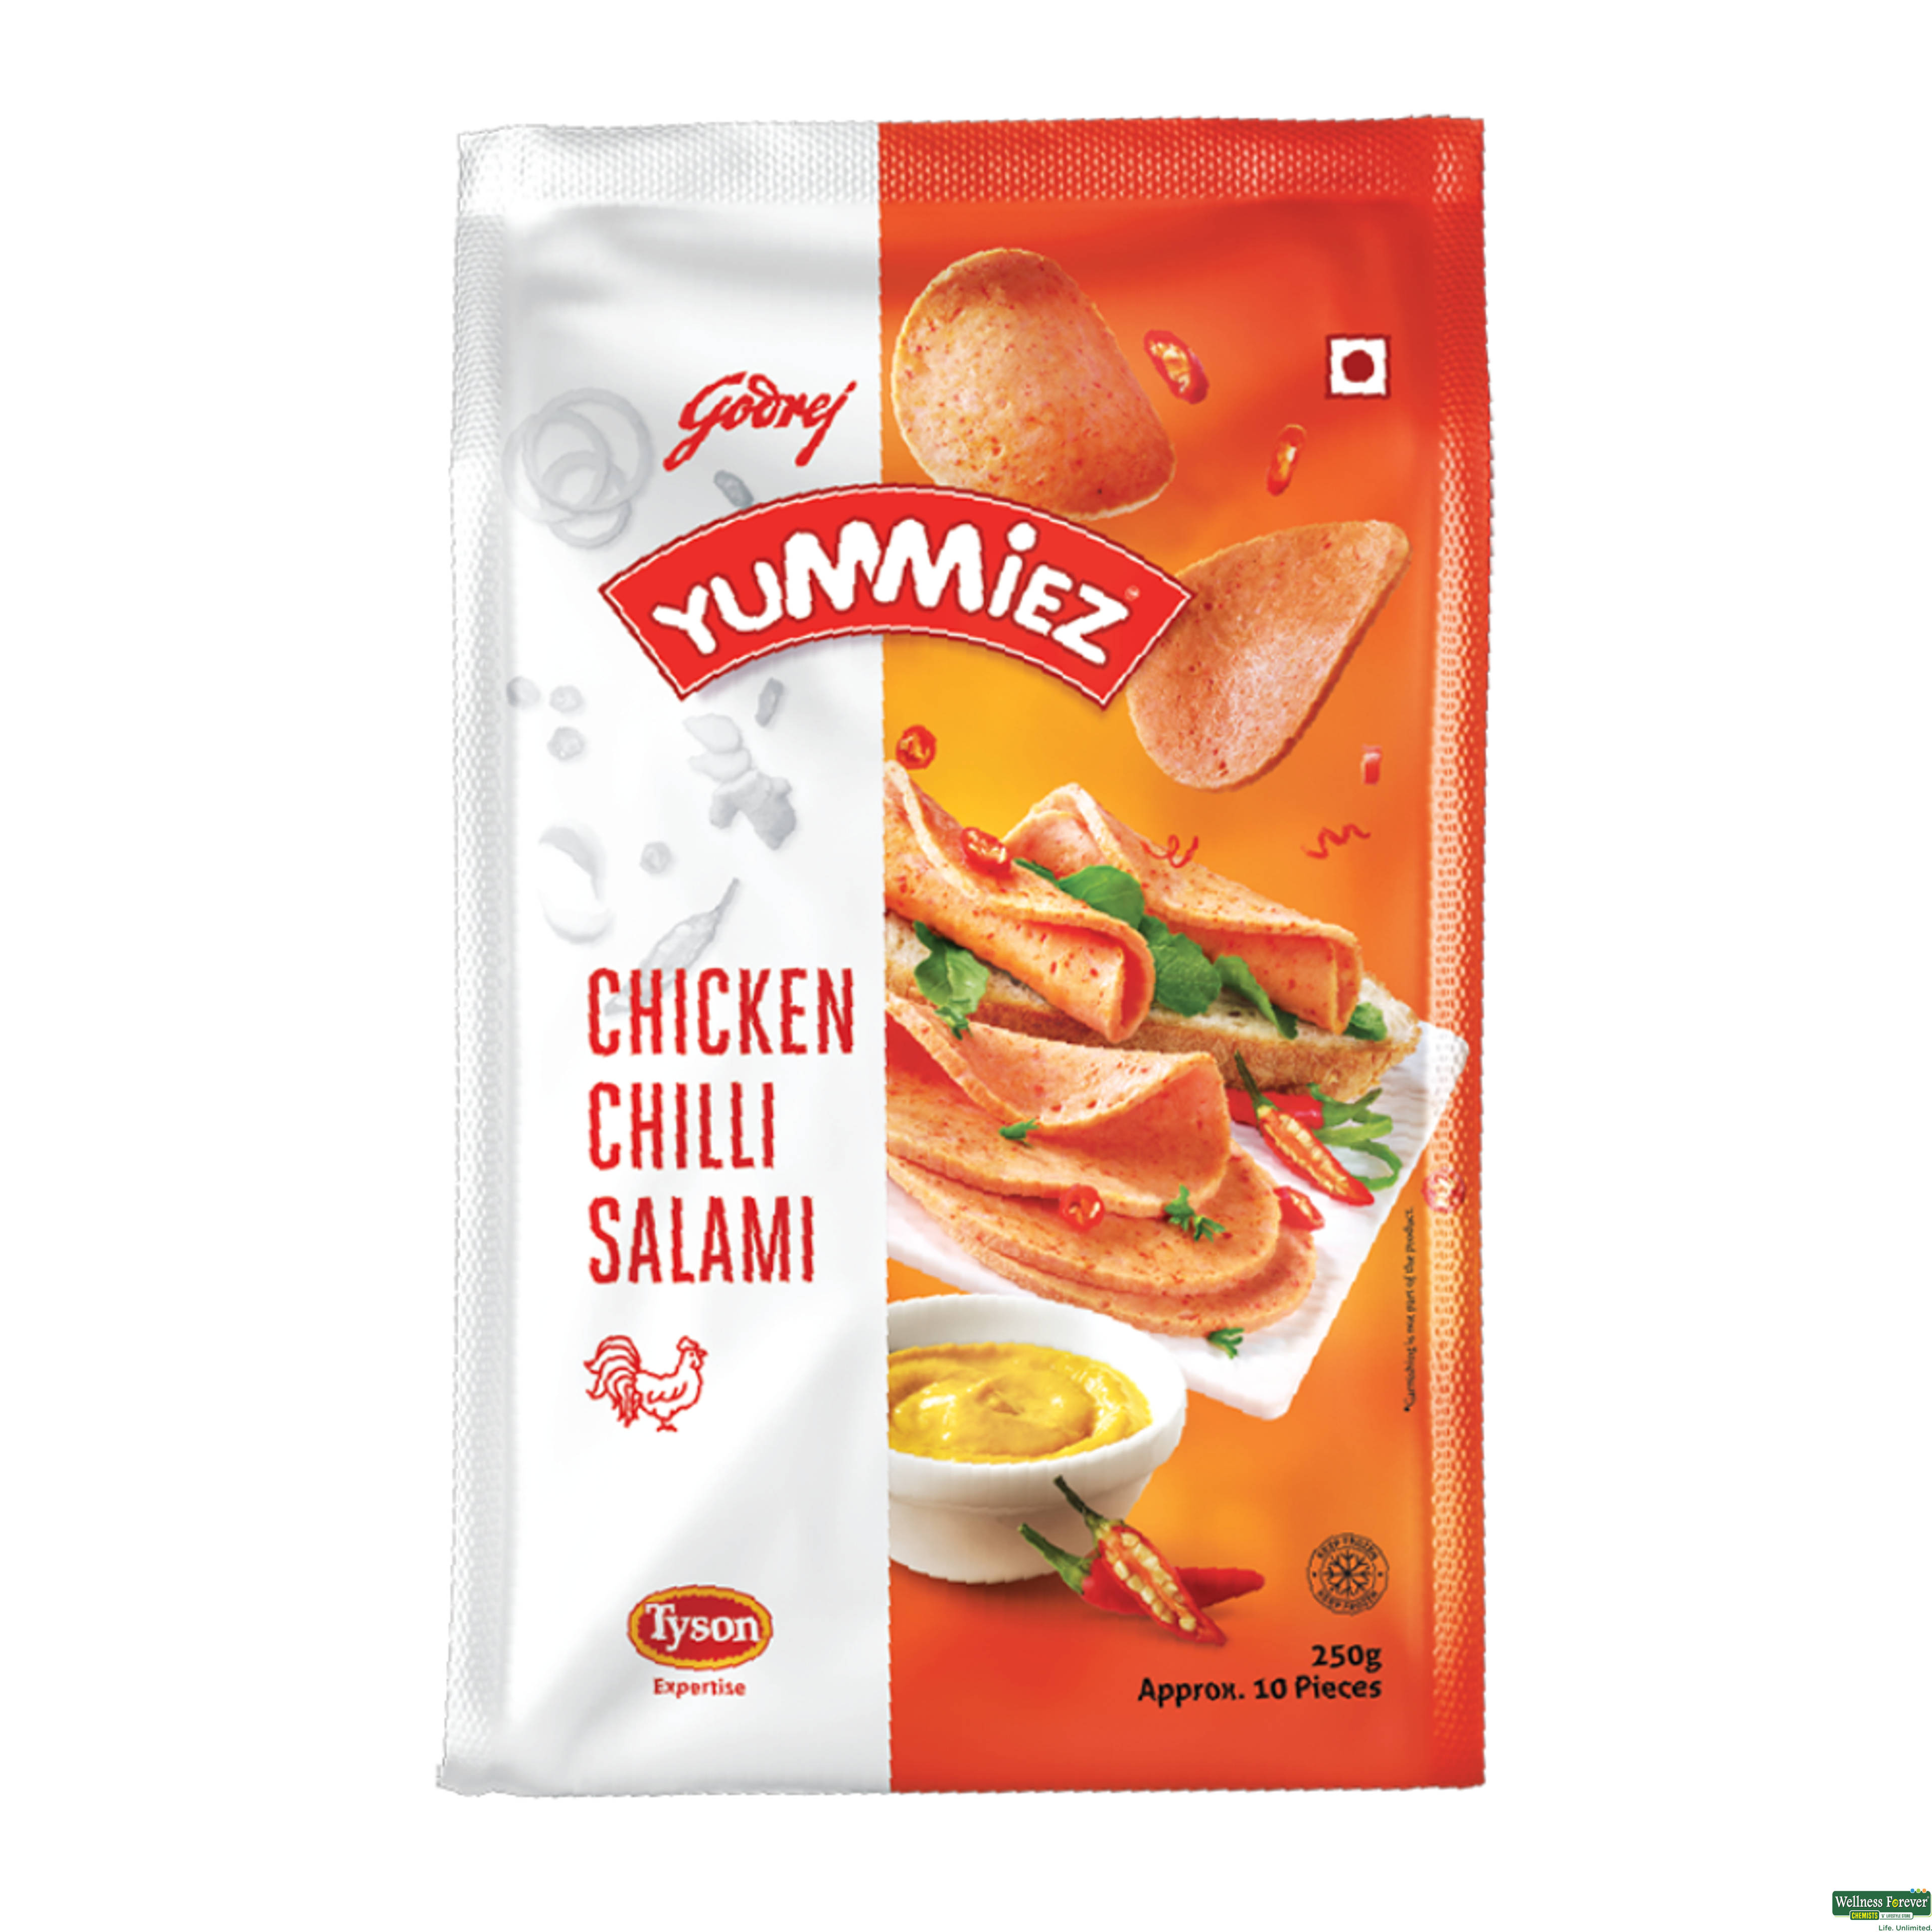 Yummiez Chicken Salami Chickenlly 250Gm-image